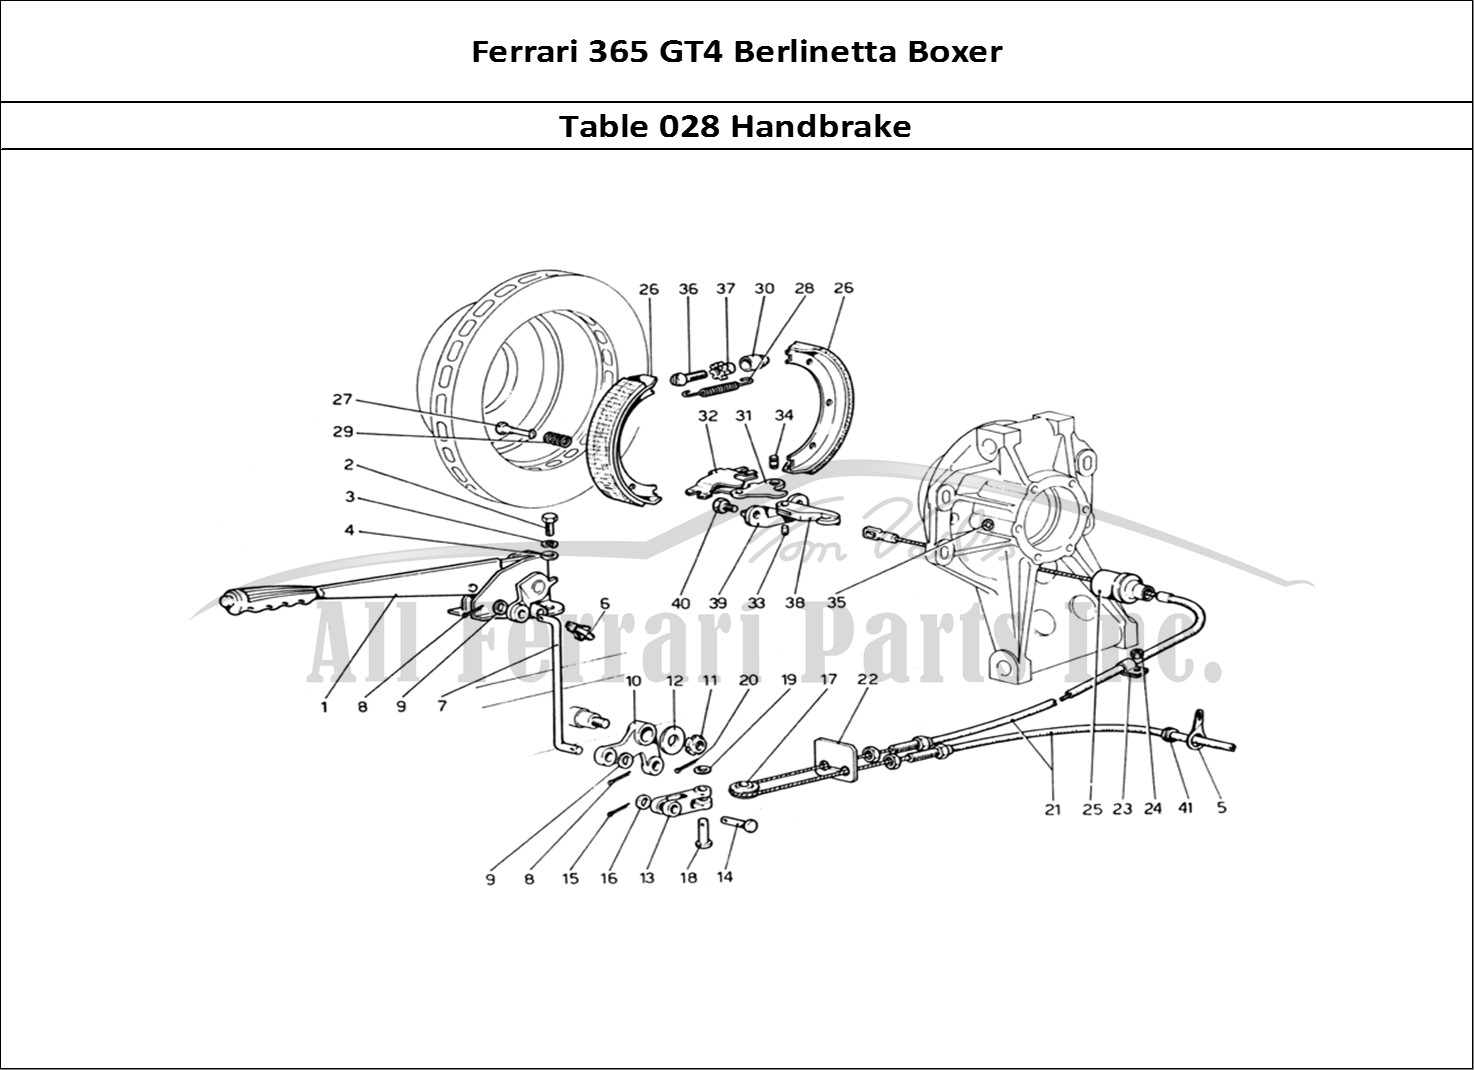 Ferrari Parts Ferrari 365 GT4 Berlinetta Boxer Page 028 Hand-Brake Control